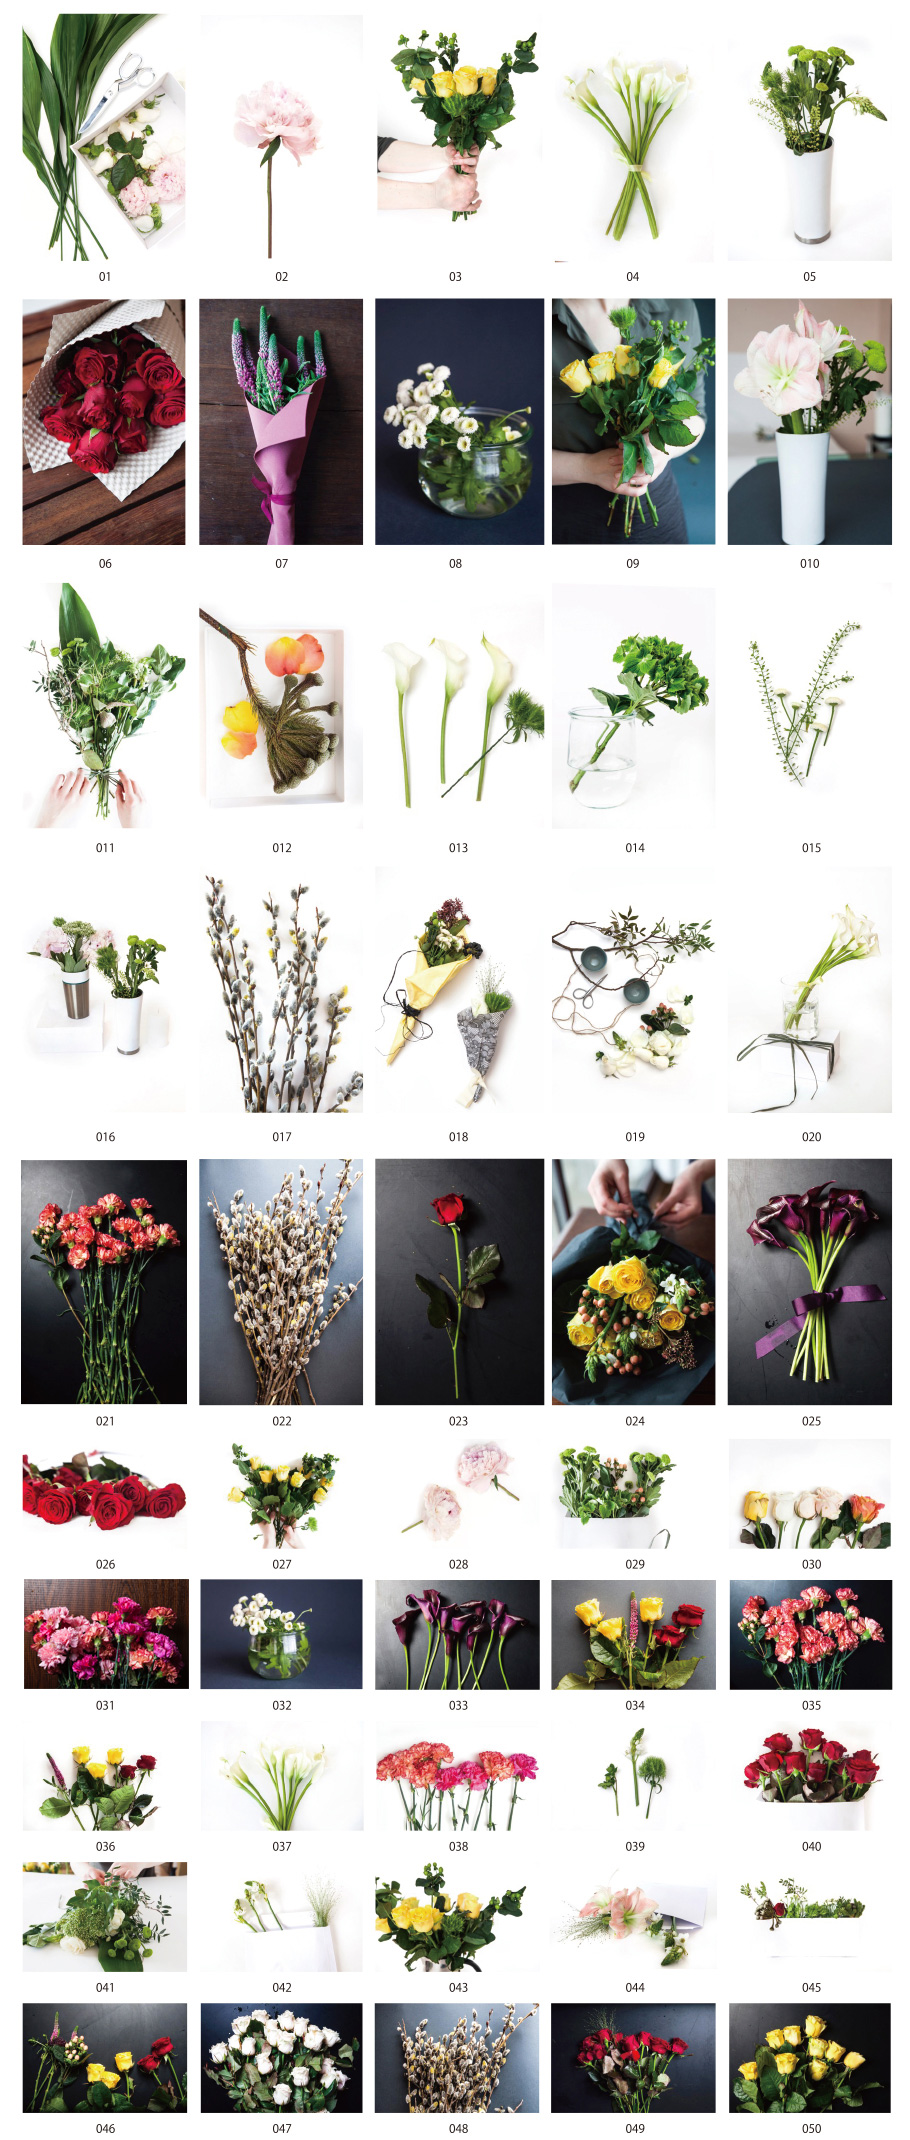 Flower arrangement photos